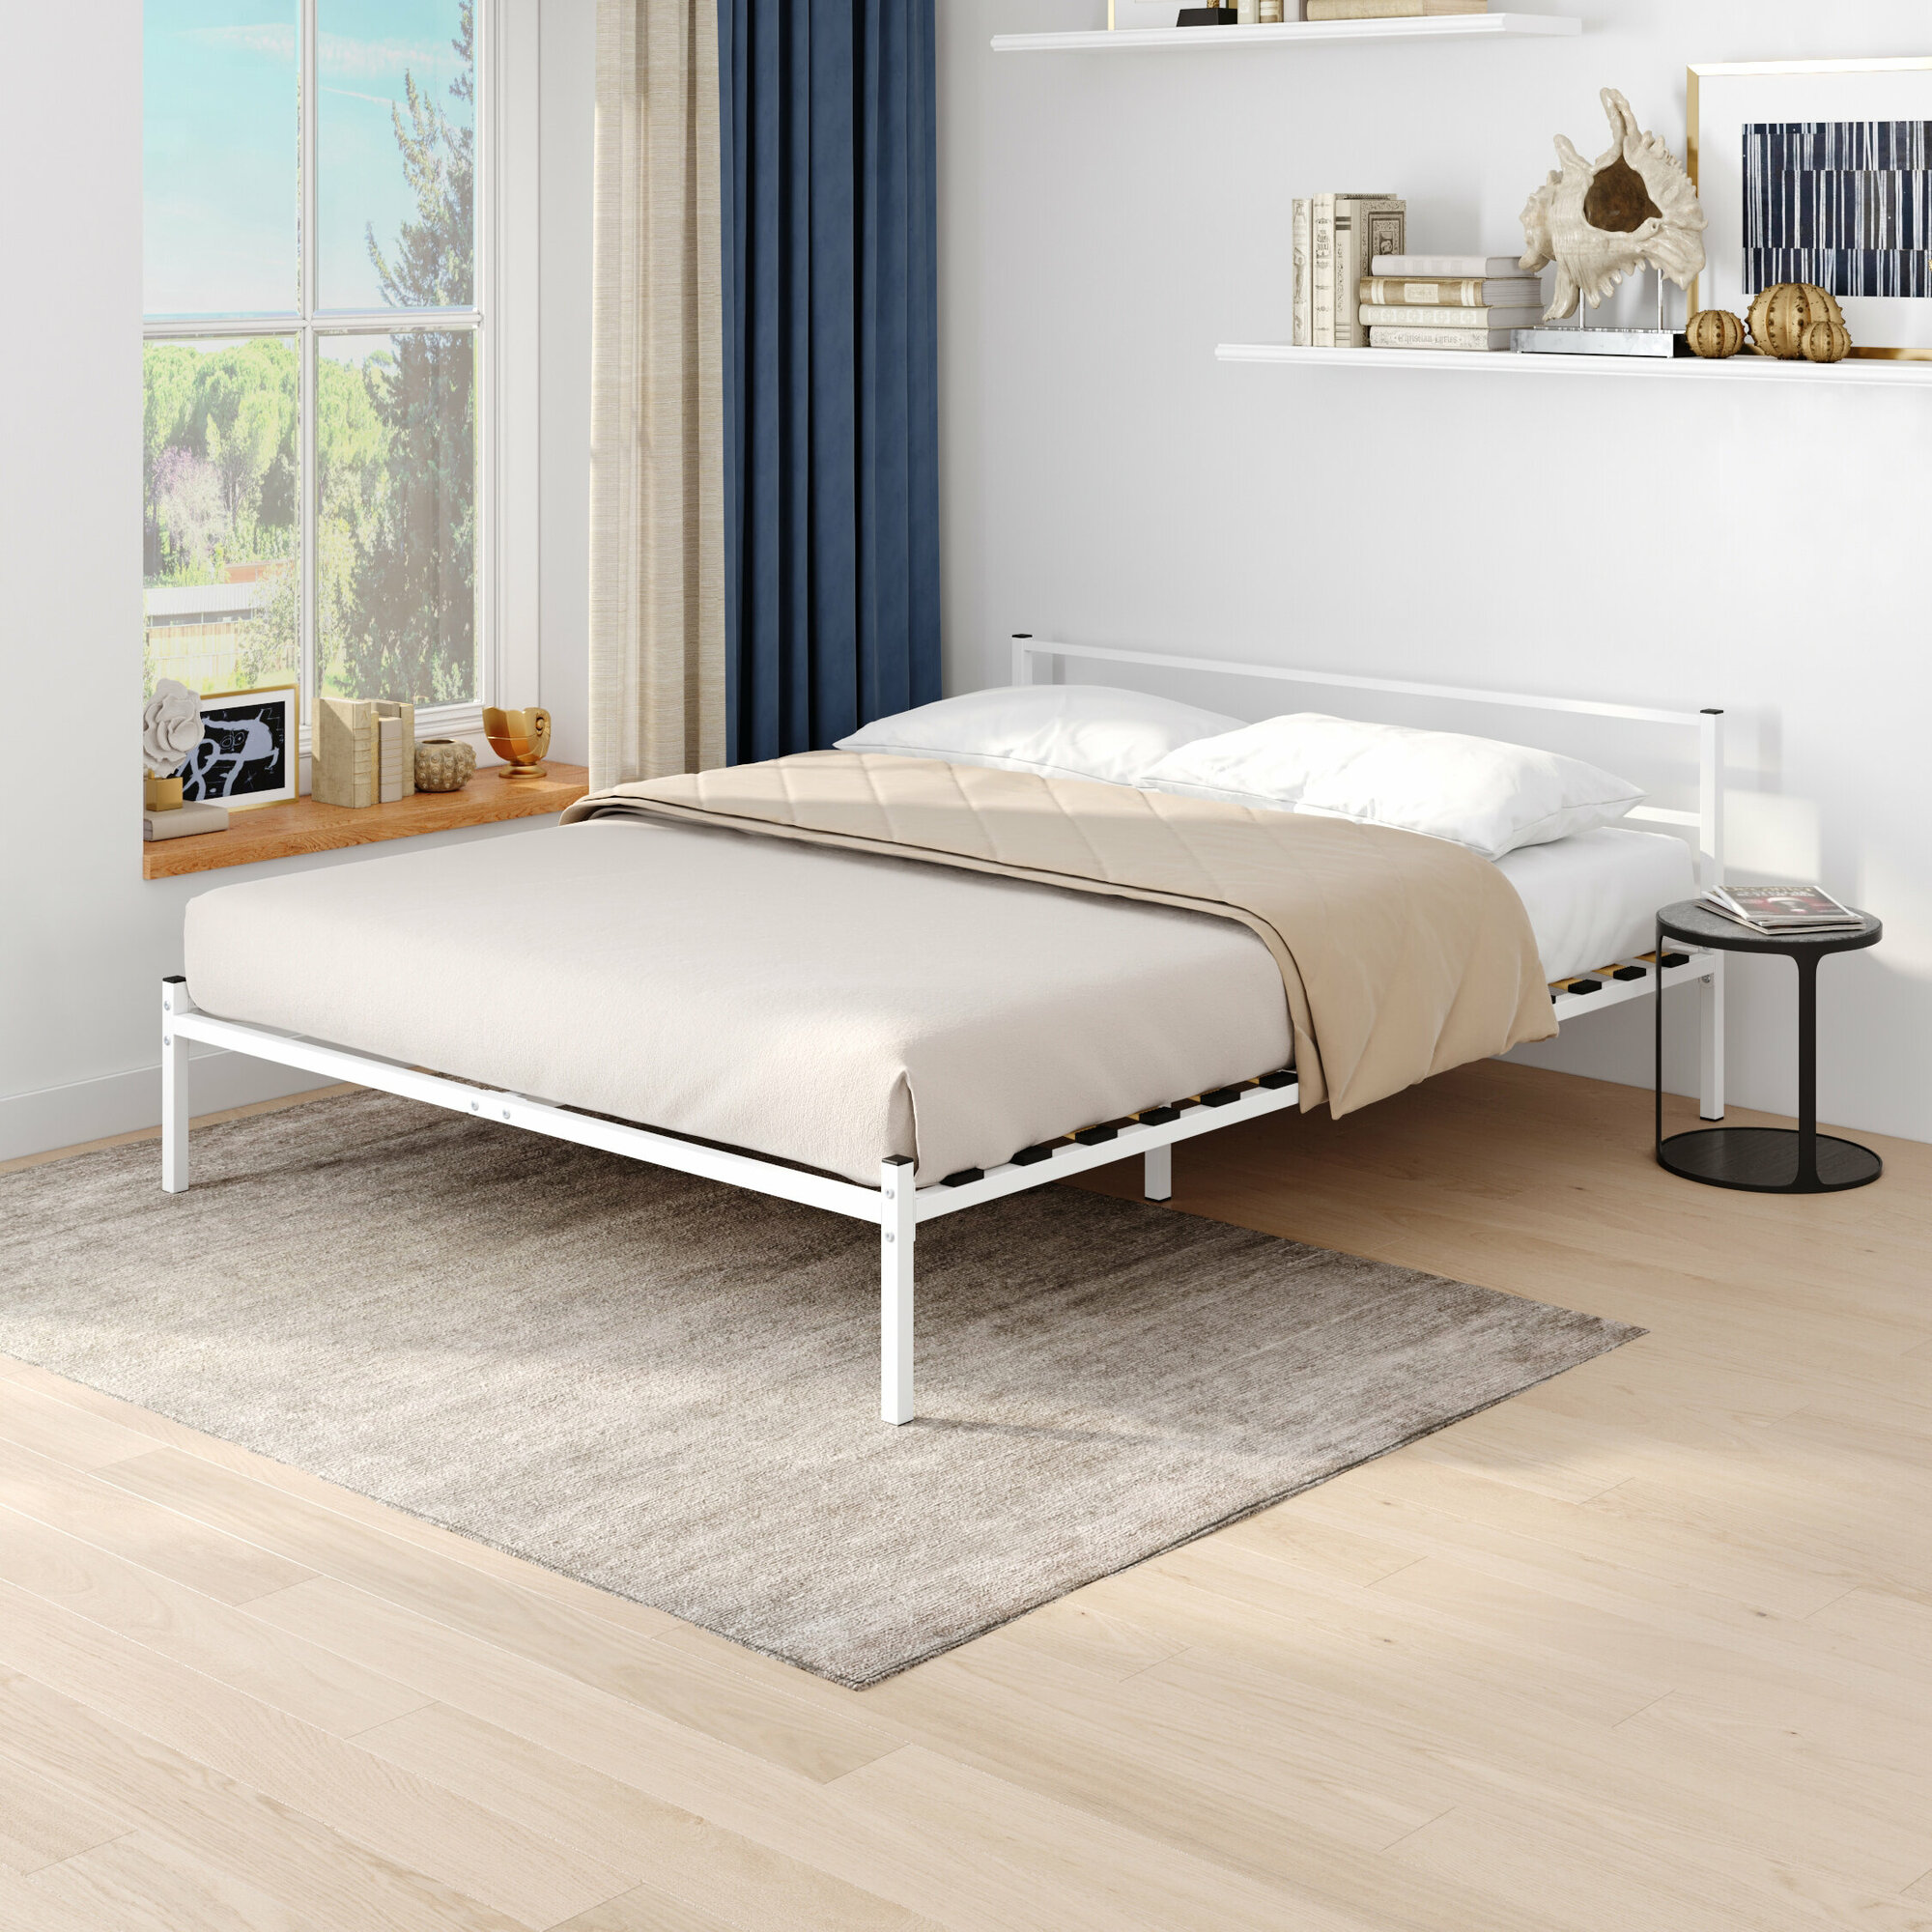 Кровать RIMINI 140х200 см, разборная, металлическая, белая